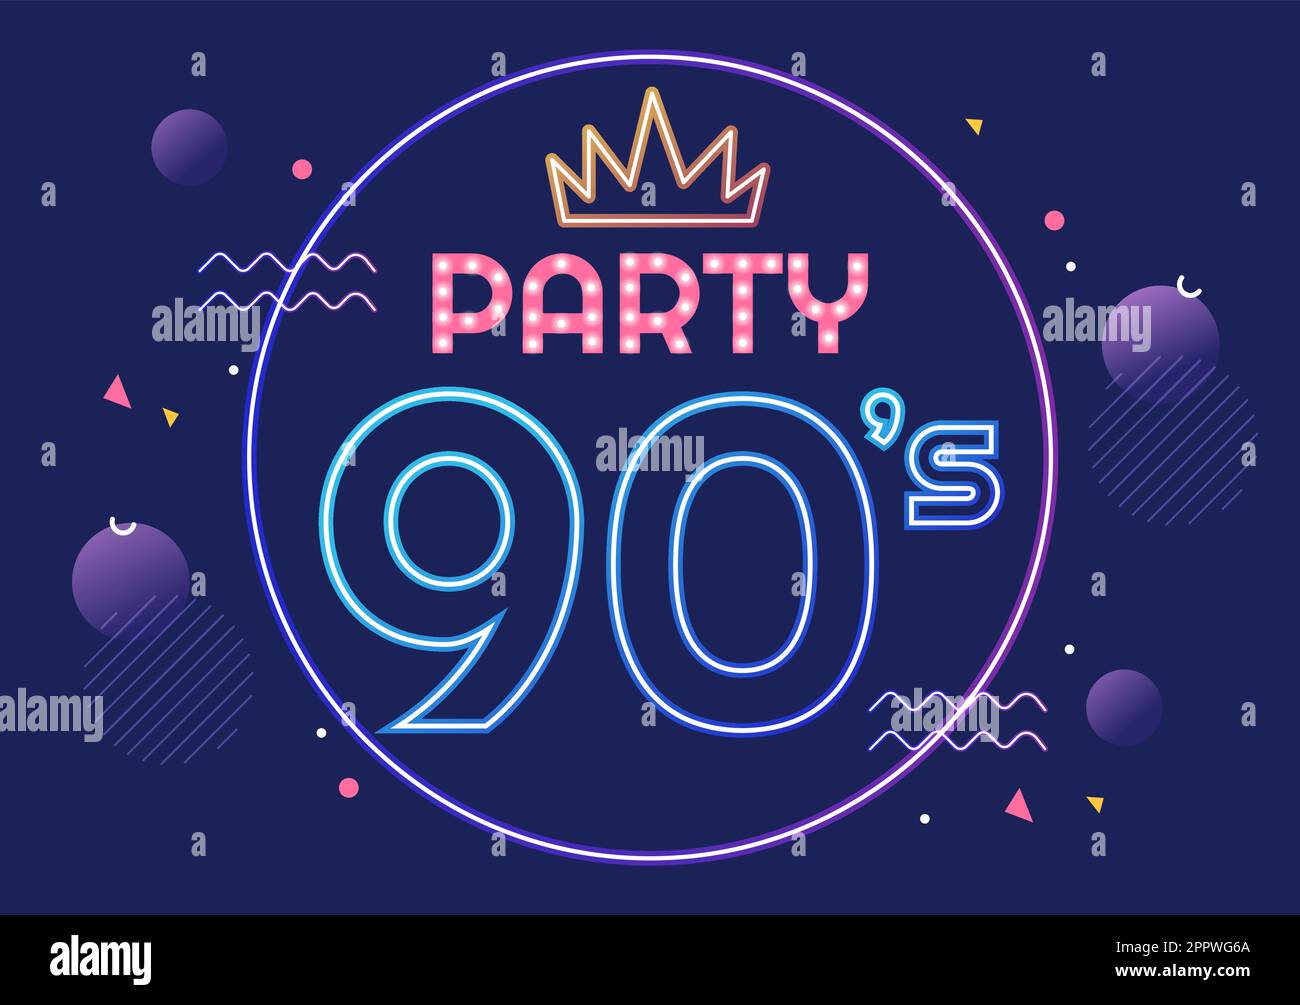 90s Retro Party Cartoon Ilustración de fondo con música de los años 90, deportivos, radio, tiempo de baile y cinta en el moderno diseño de estilo plano Ilustración del Vector